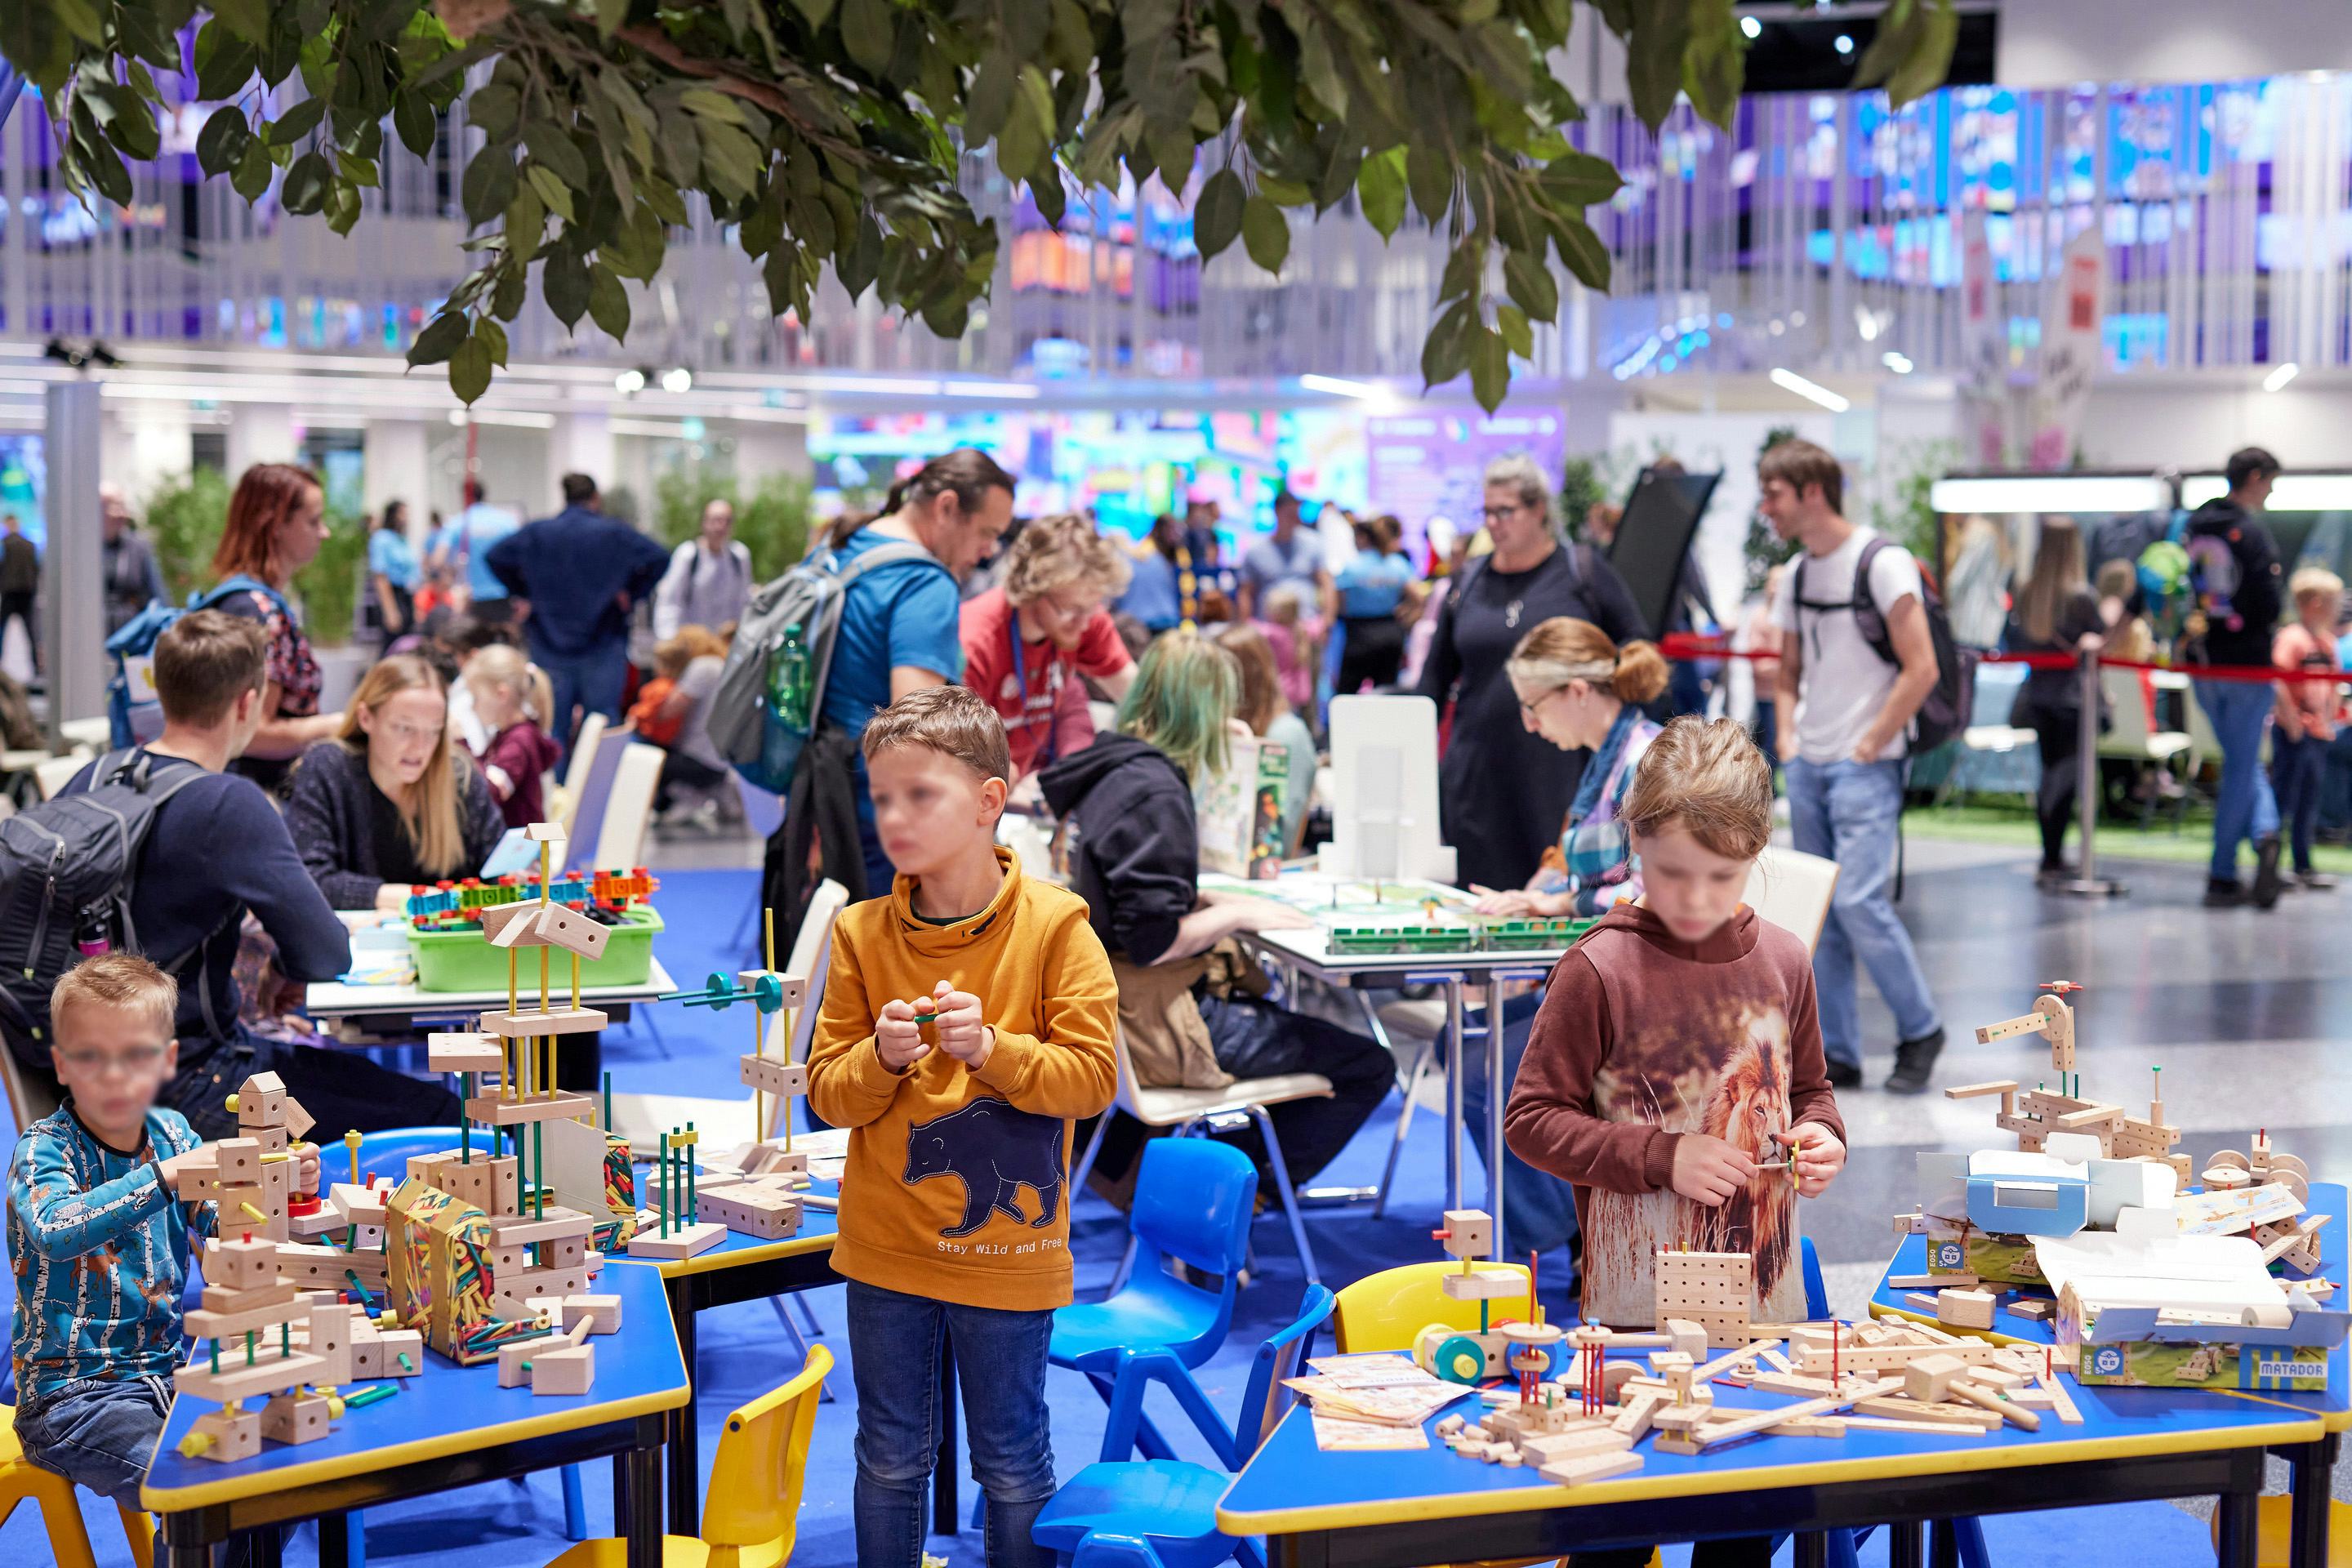 Foto: Kinder mit Bausteinen in einer Halle voller Menschen und Pflanzen